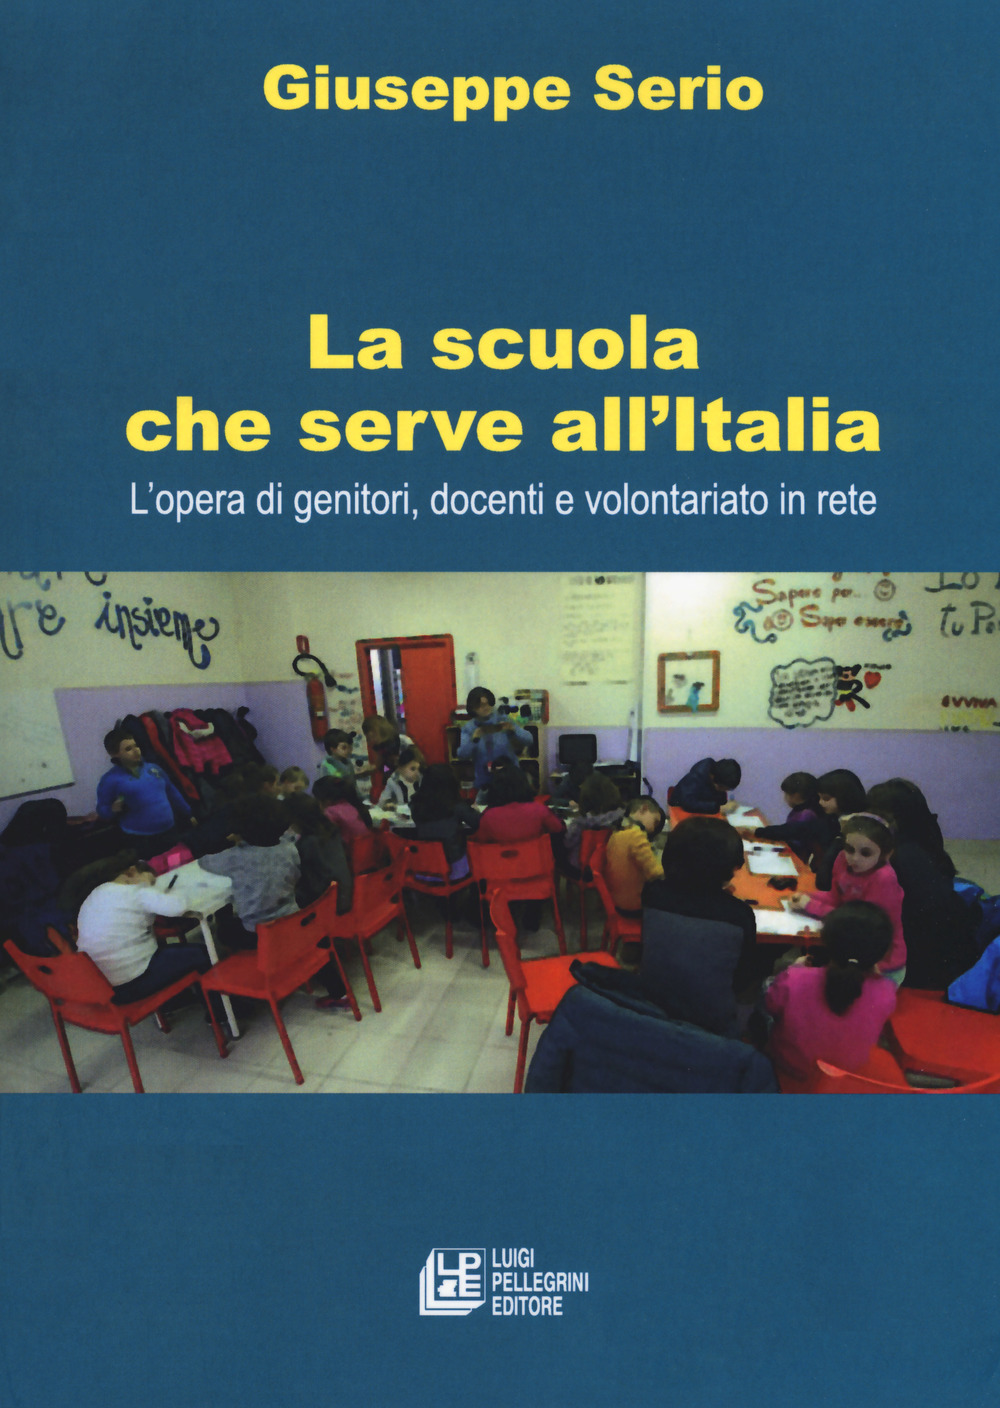 Image of La scuola che serve all'Italia. L'opera dei genitori, docenti e volontariato in rete